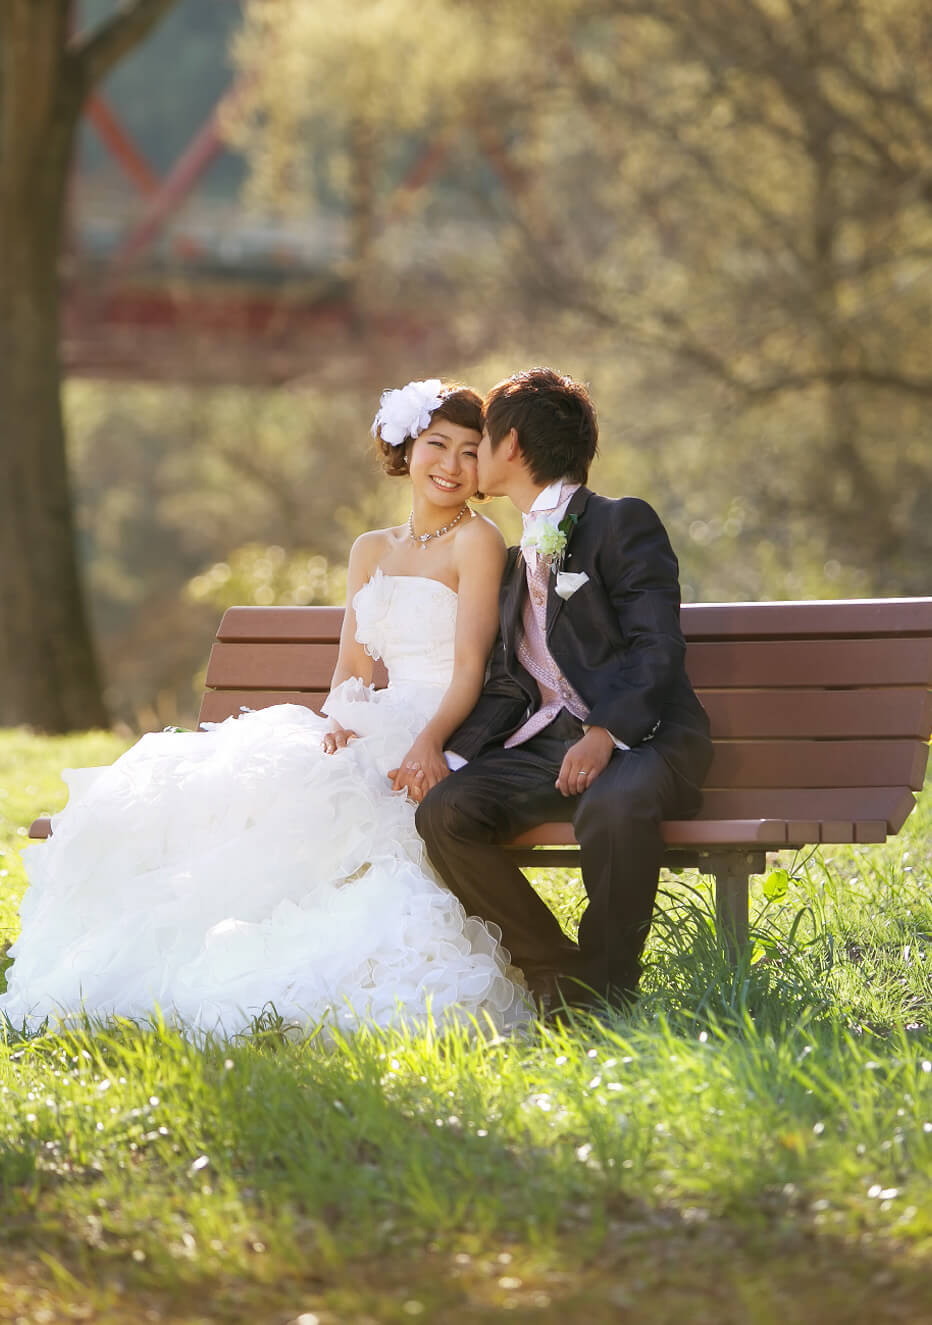 写真：ウェディングドレスを着た新婦とタキシードを着た新郎がベンチでくつろぐ様子